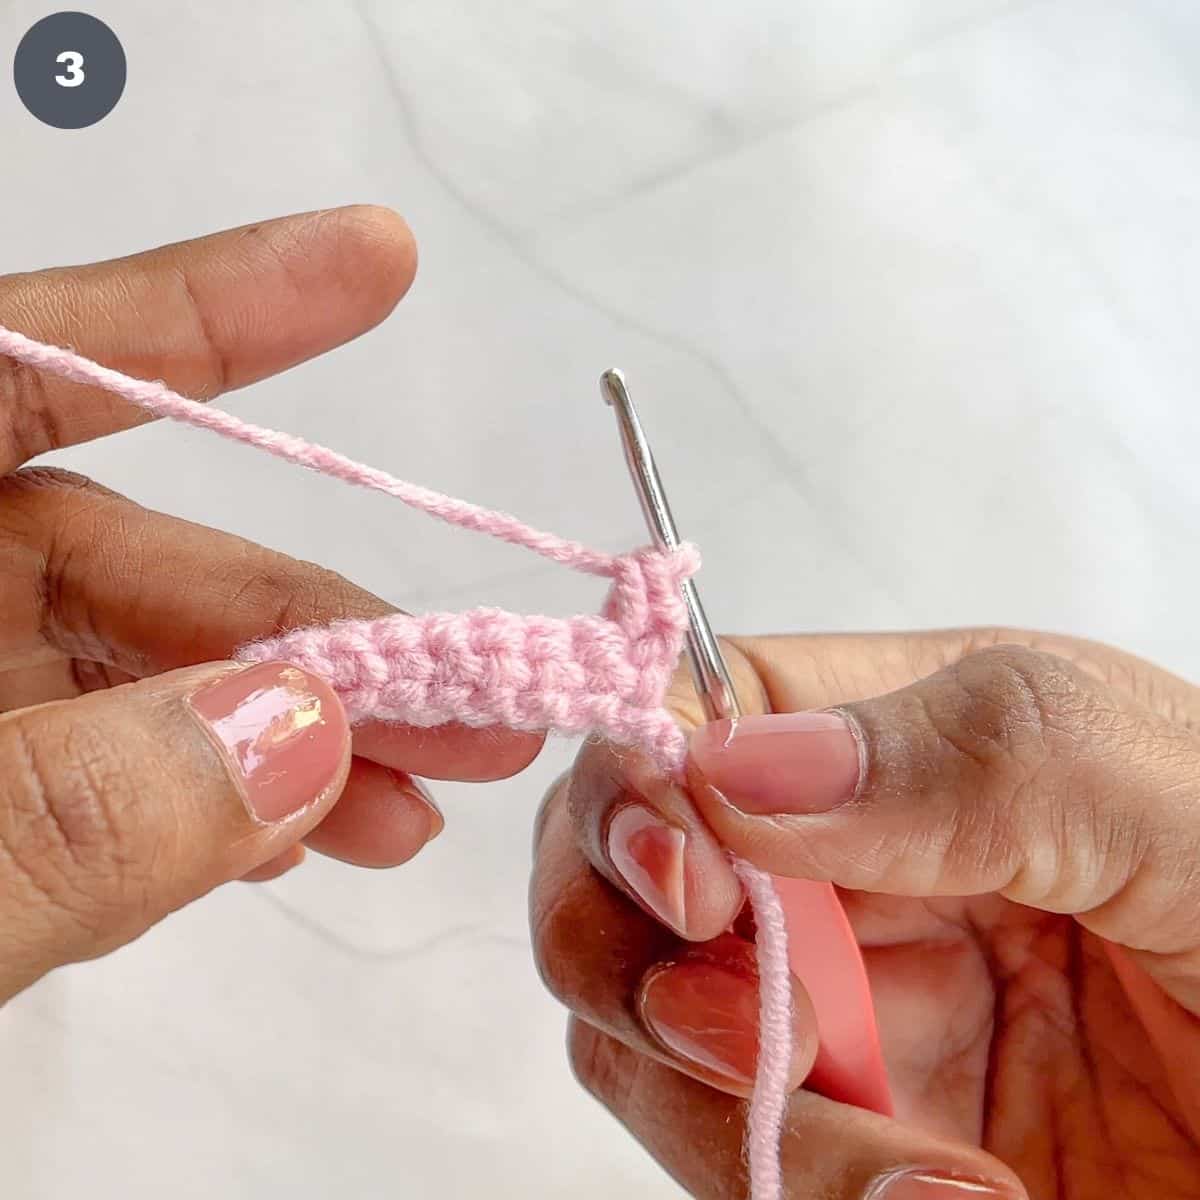 Stitching single crochets with pink yarn.